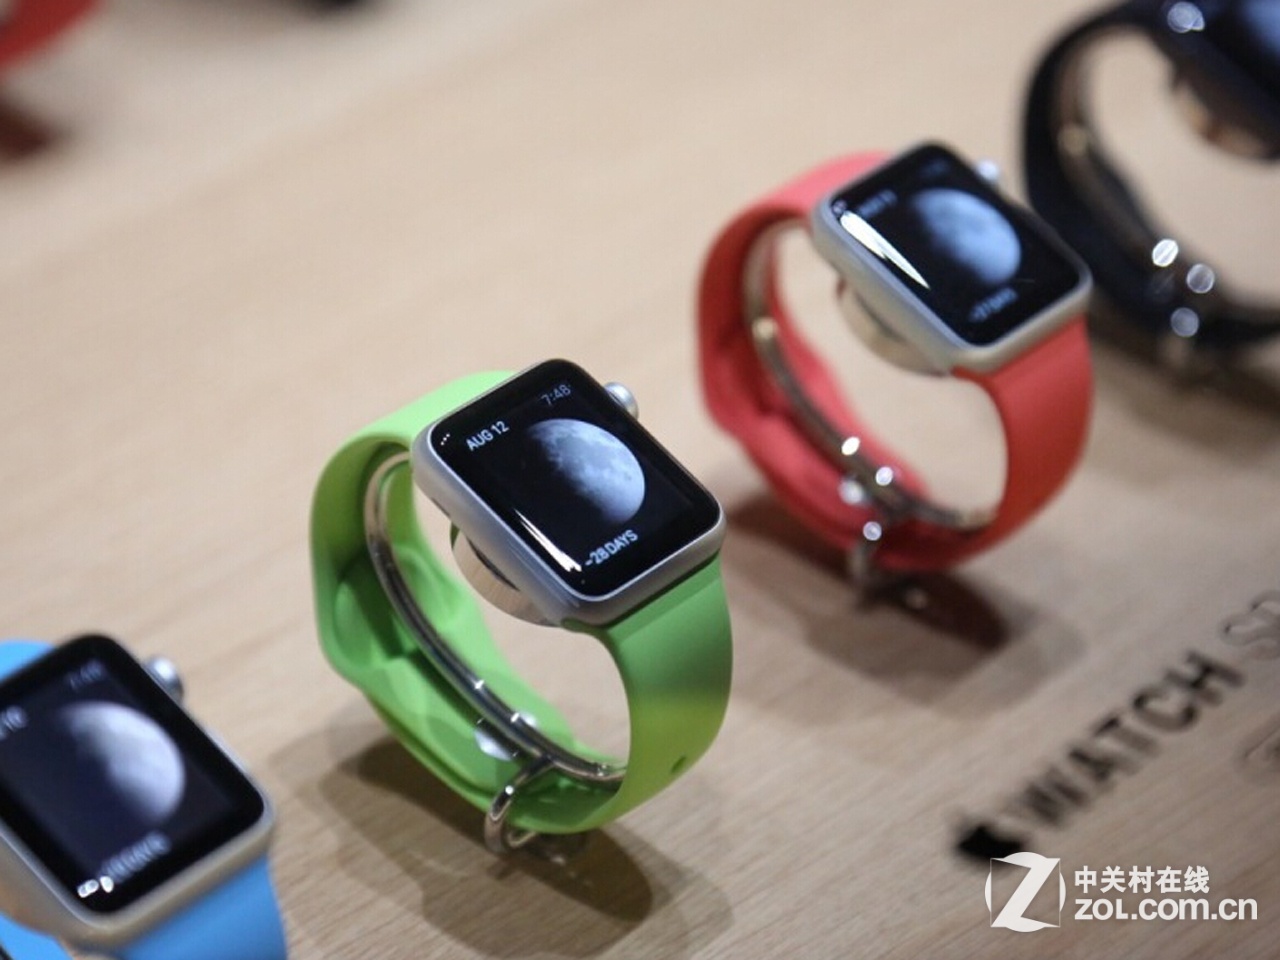 软件更新 Apple Watch首次优化健康功能